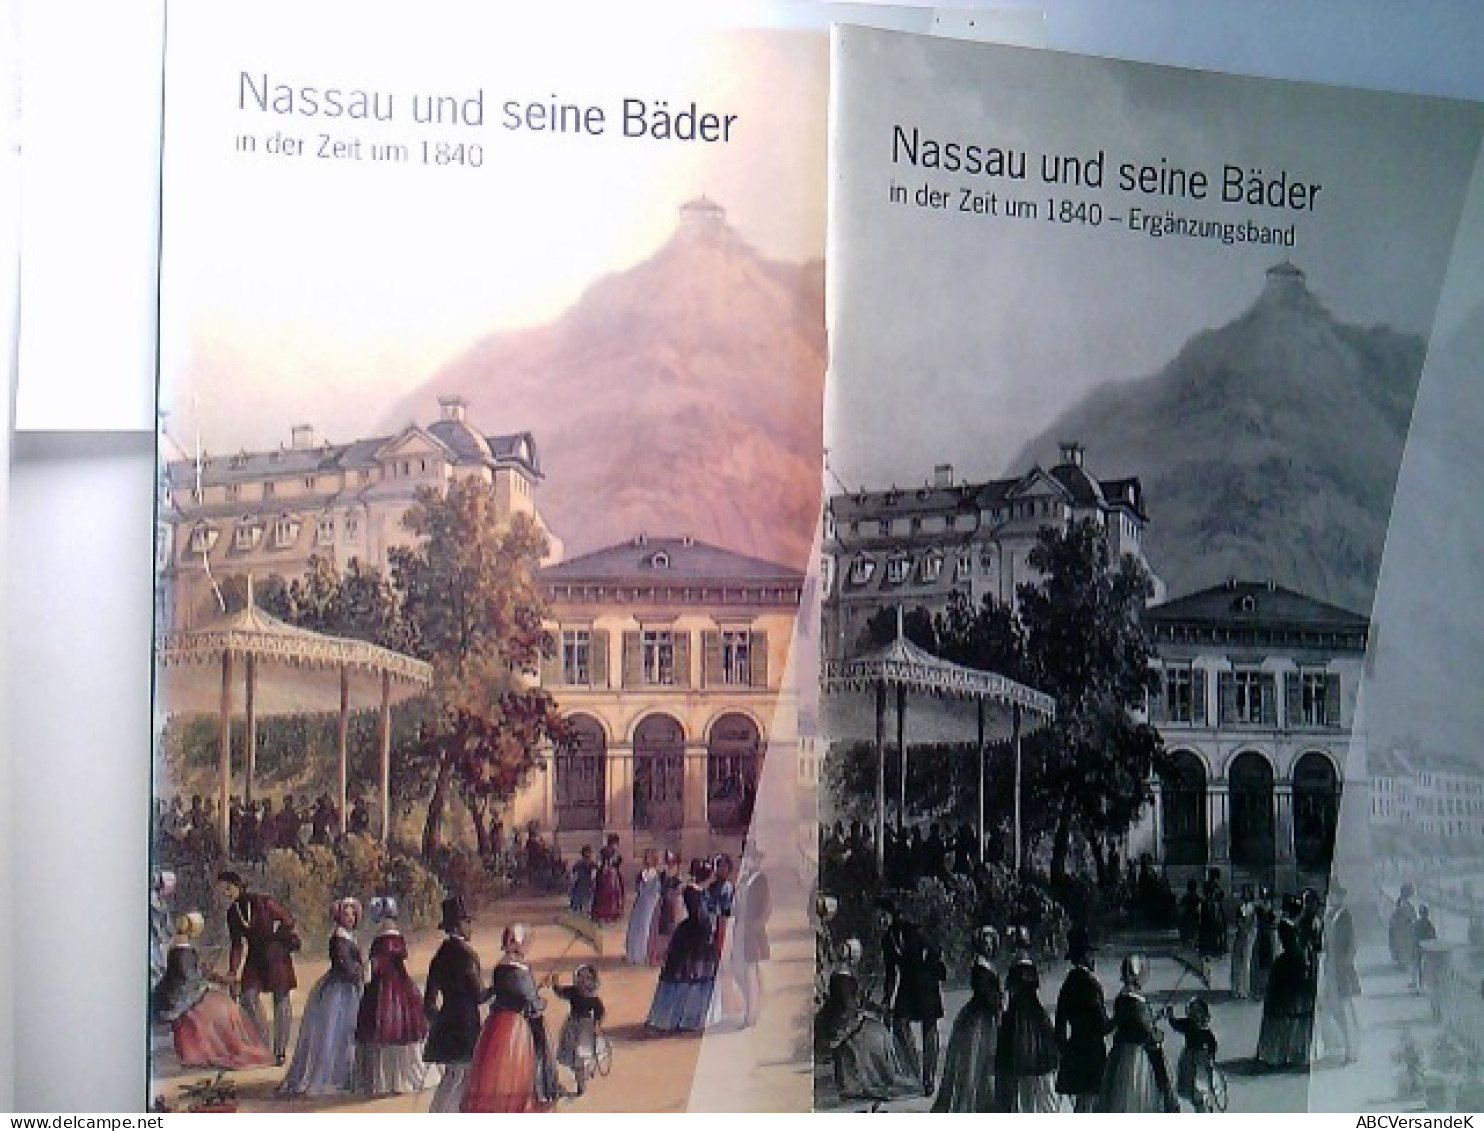 Nassau Und Seine Bäder In Der Zeit Um 1840 Und Ergänzungsband. (2 Bände). - Hesse